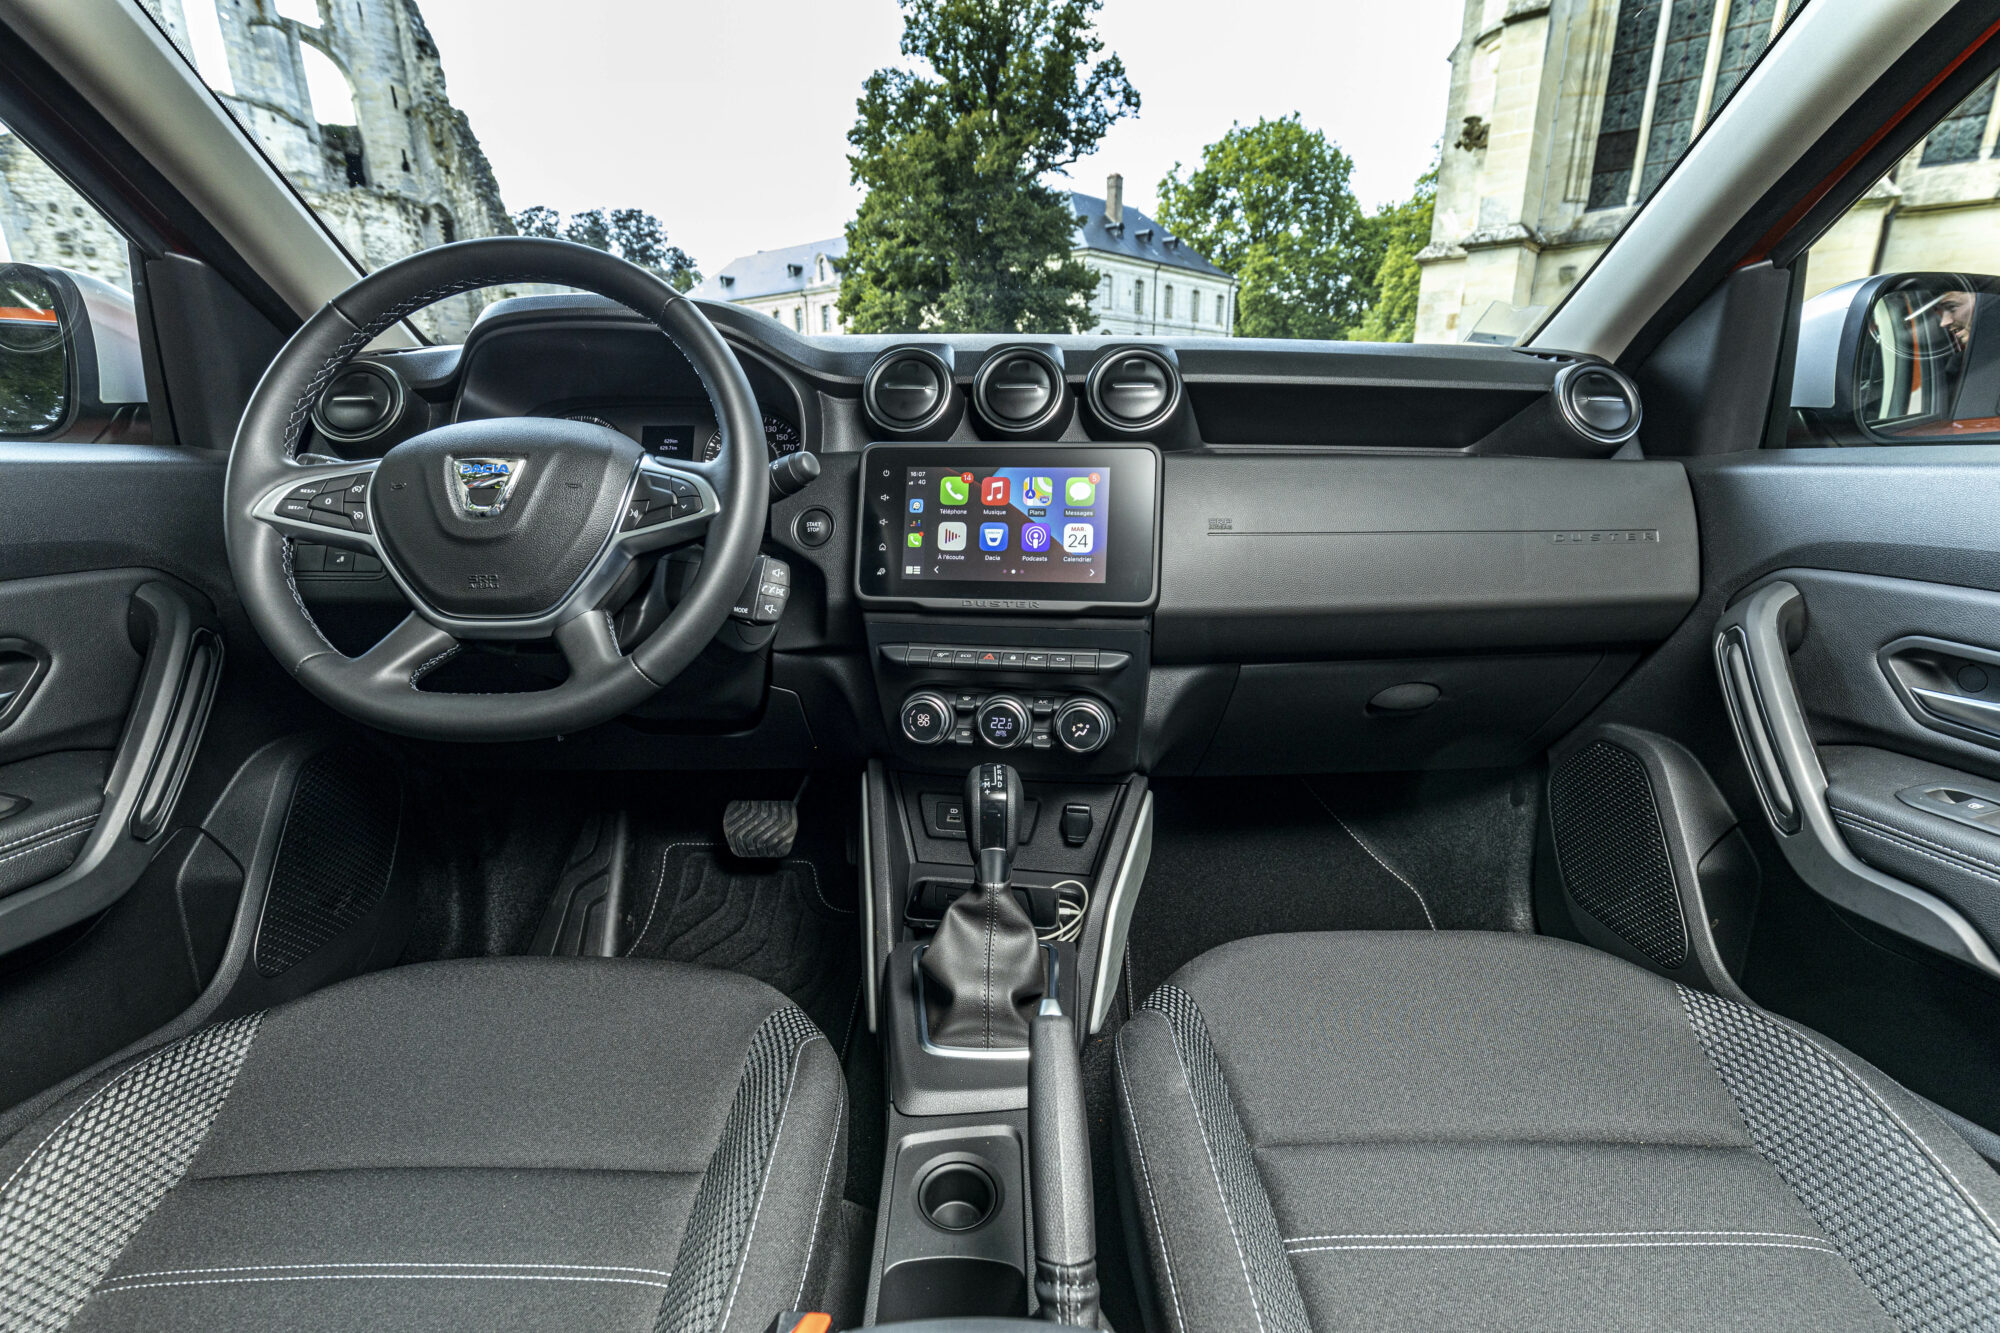 2021 - New Dacia Duster 4X2 - Arizona Orange tests drive